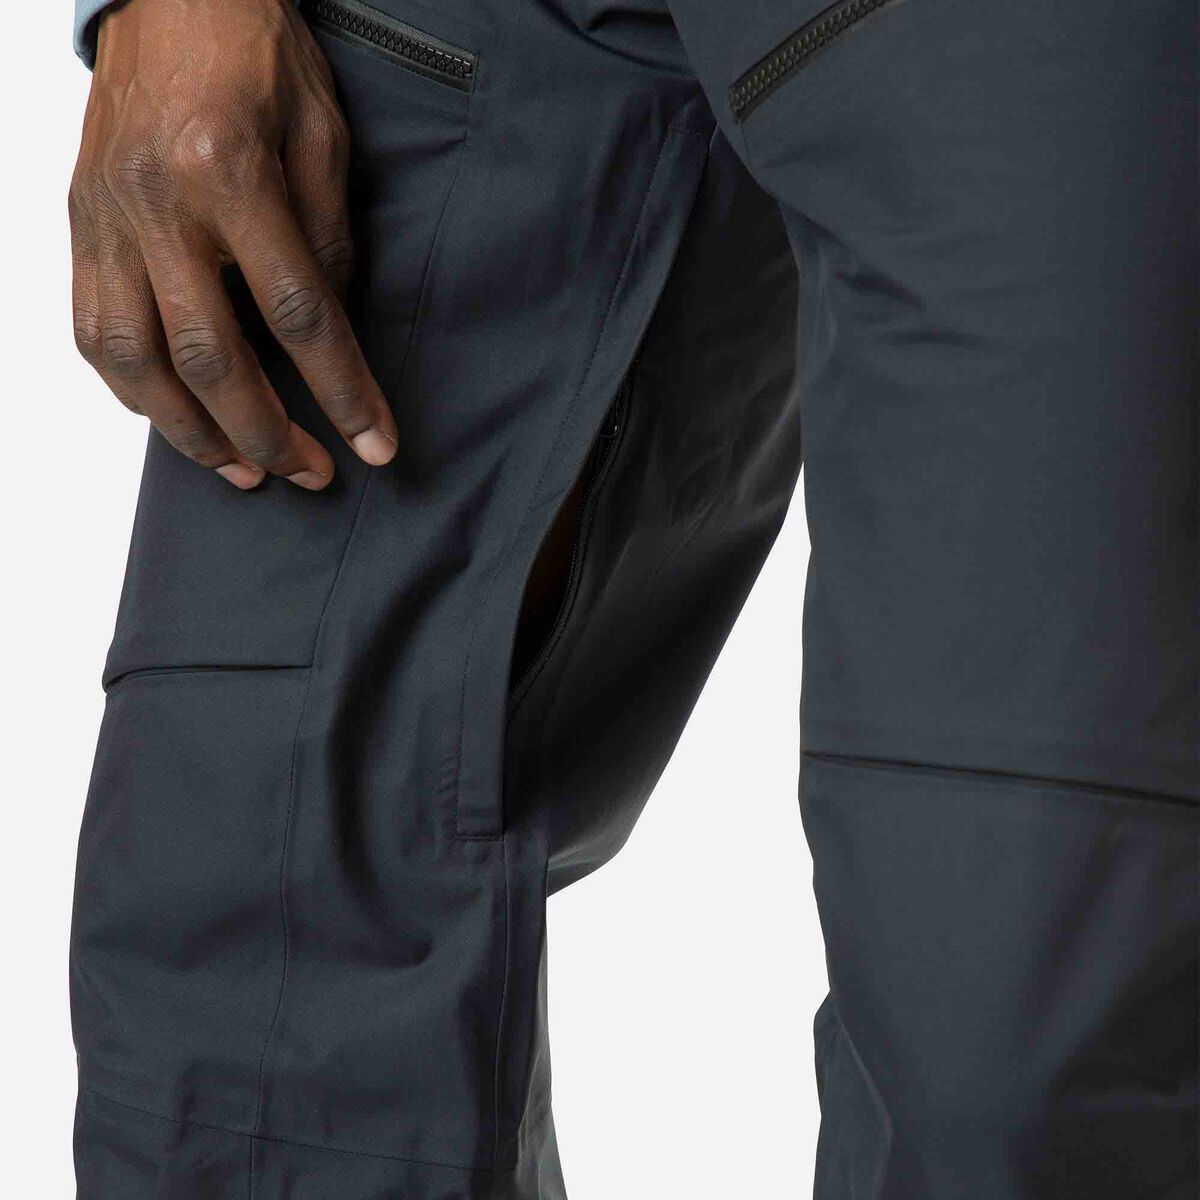 Rossignol Pantalones SKPR tres estratos para hombre black